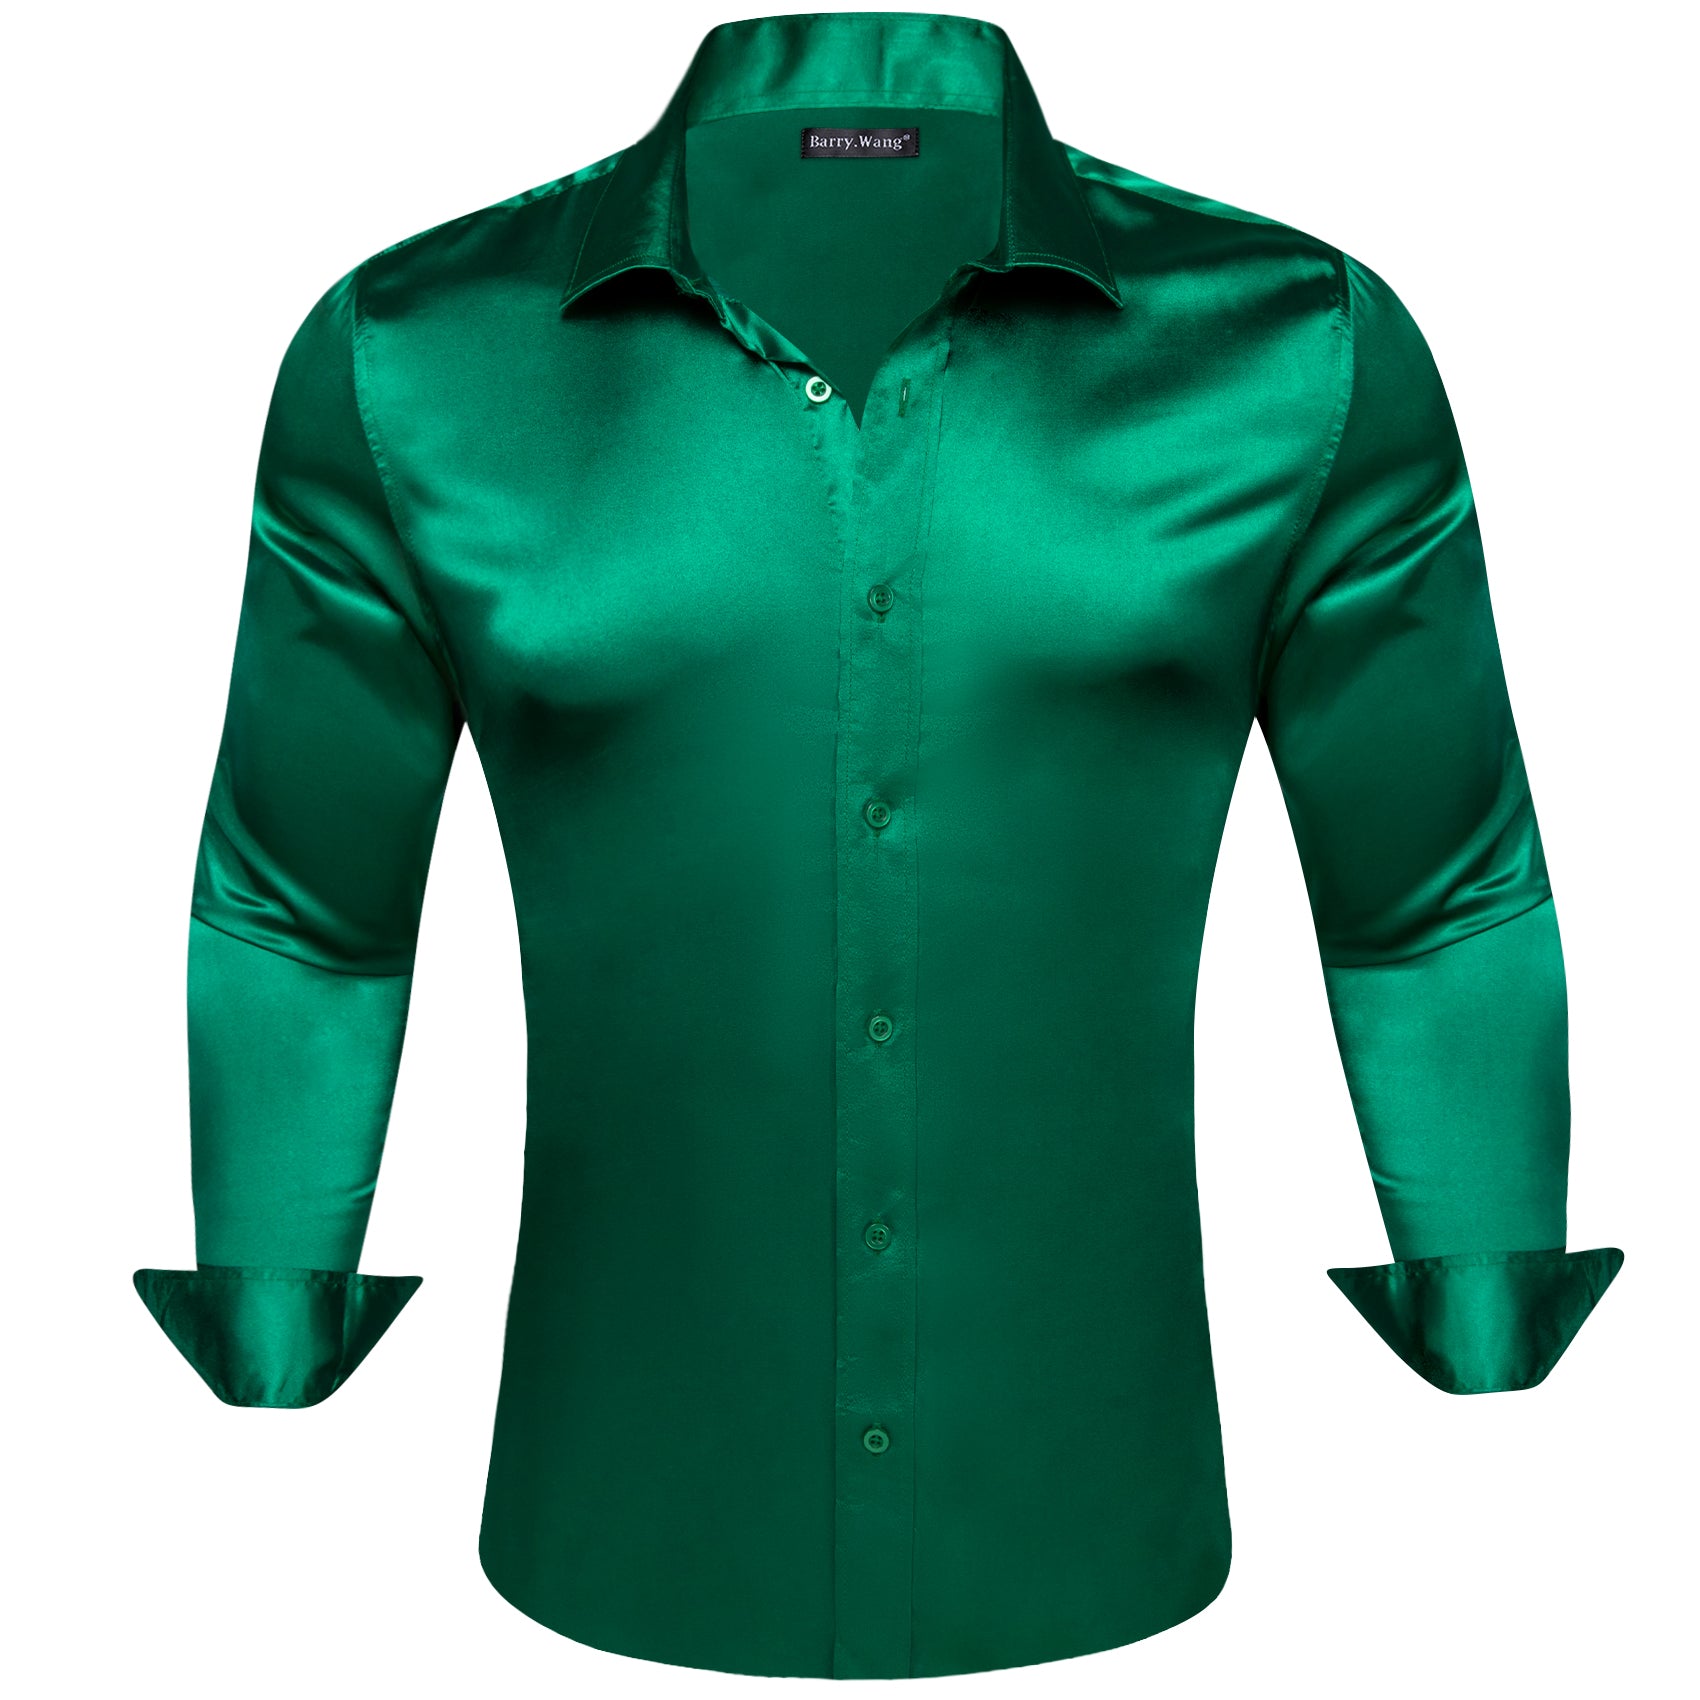 Barry.wang Dark Green Solid Silk Men's Shirt